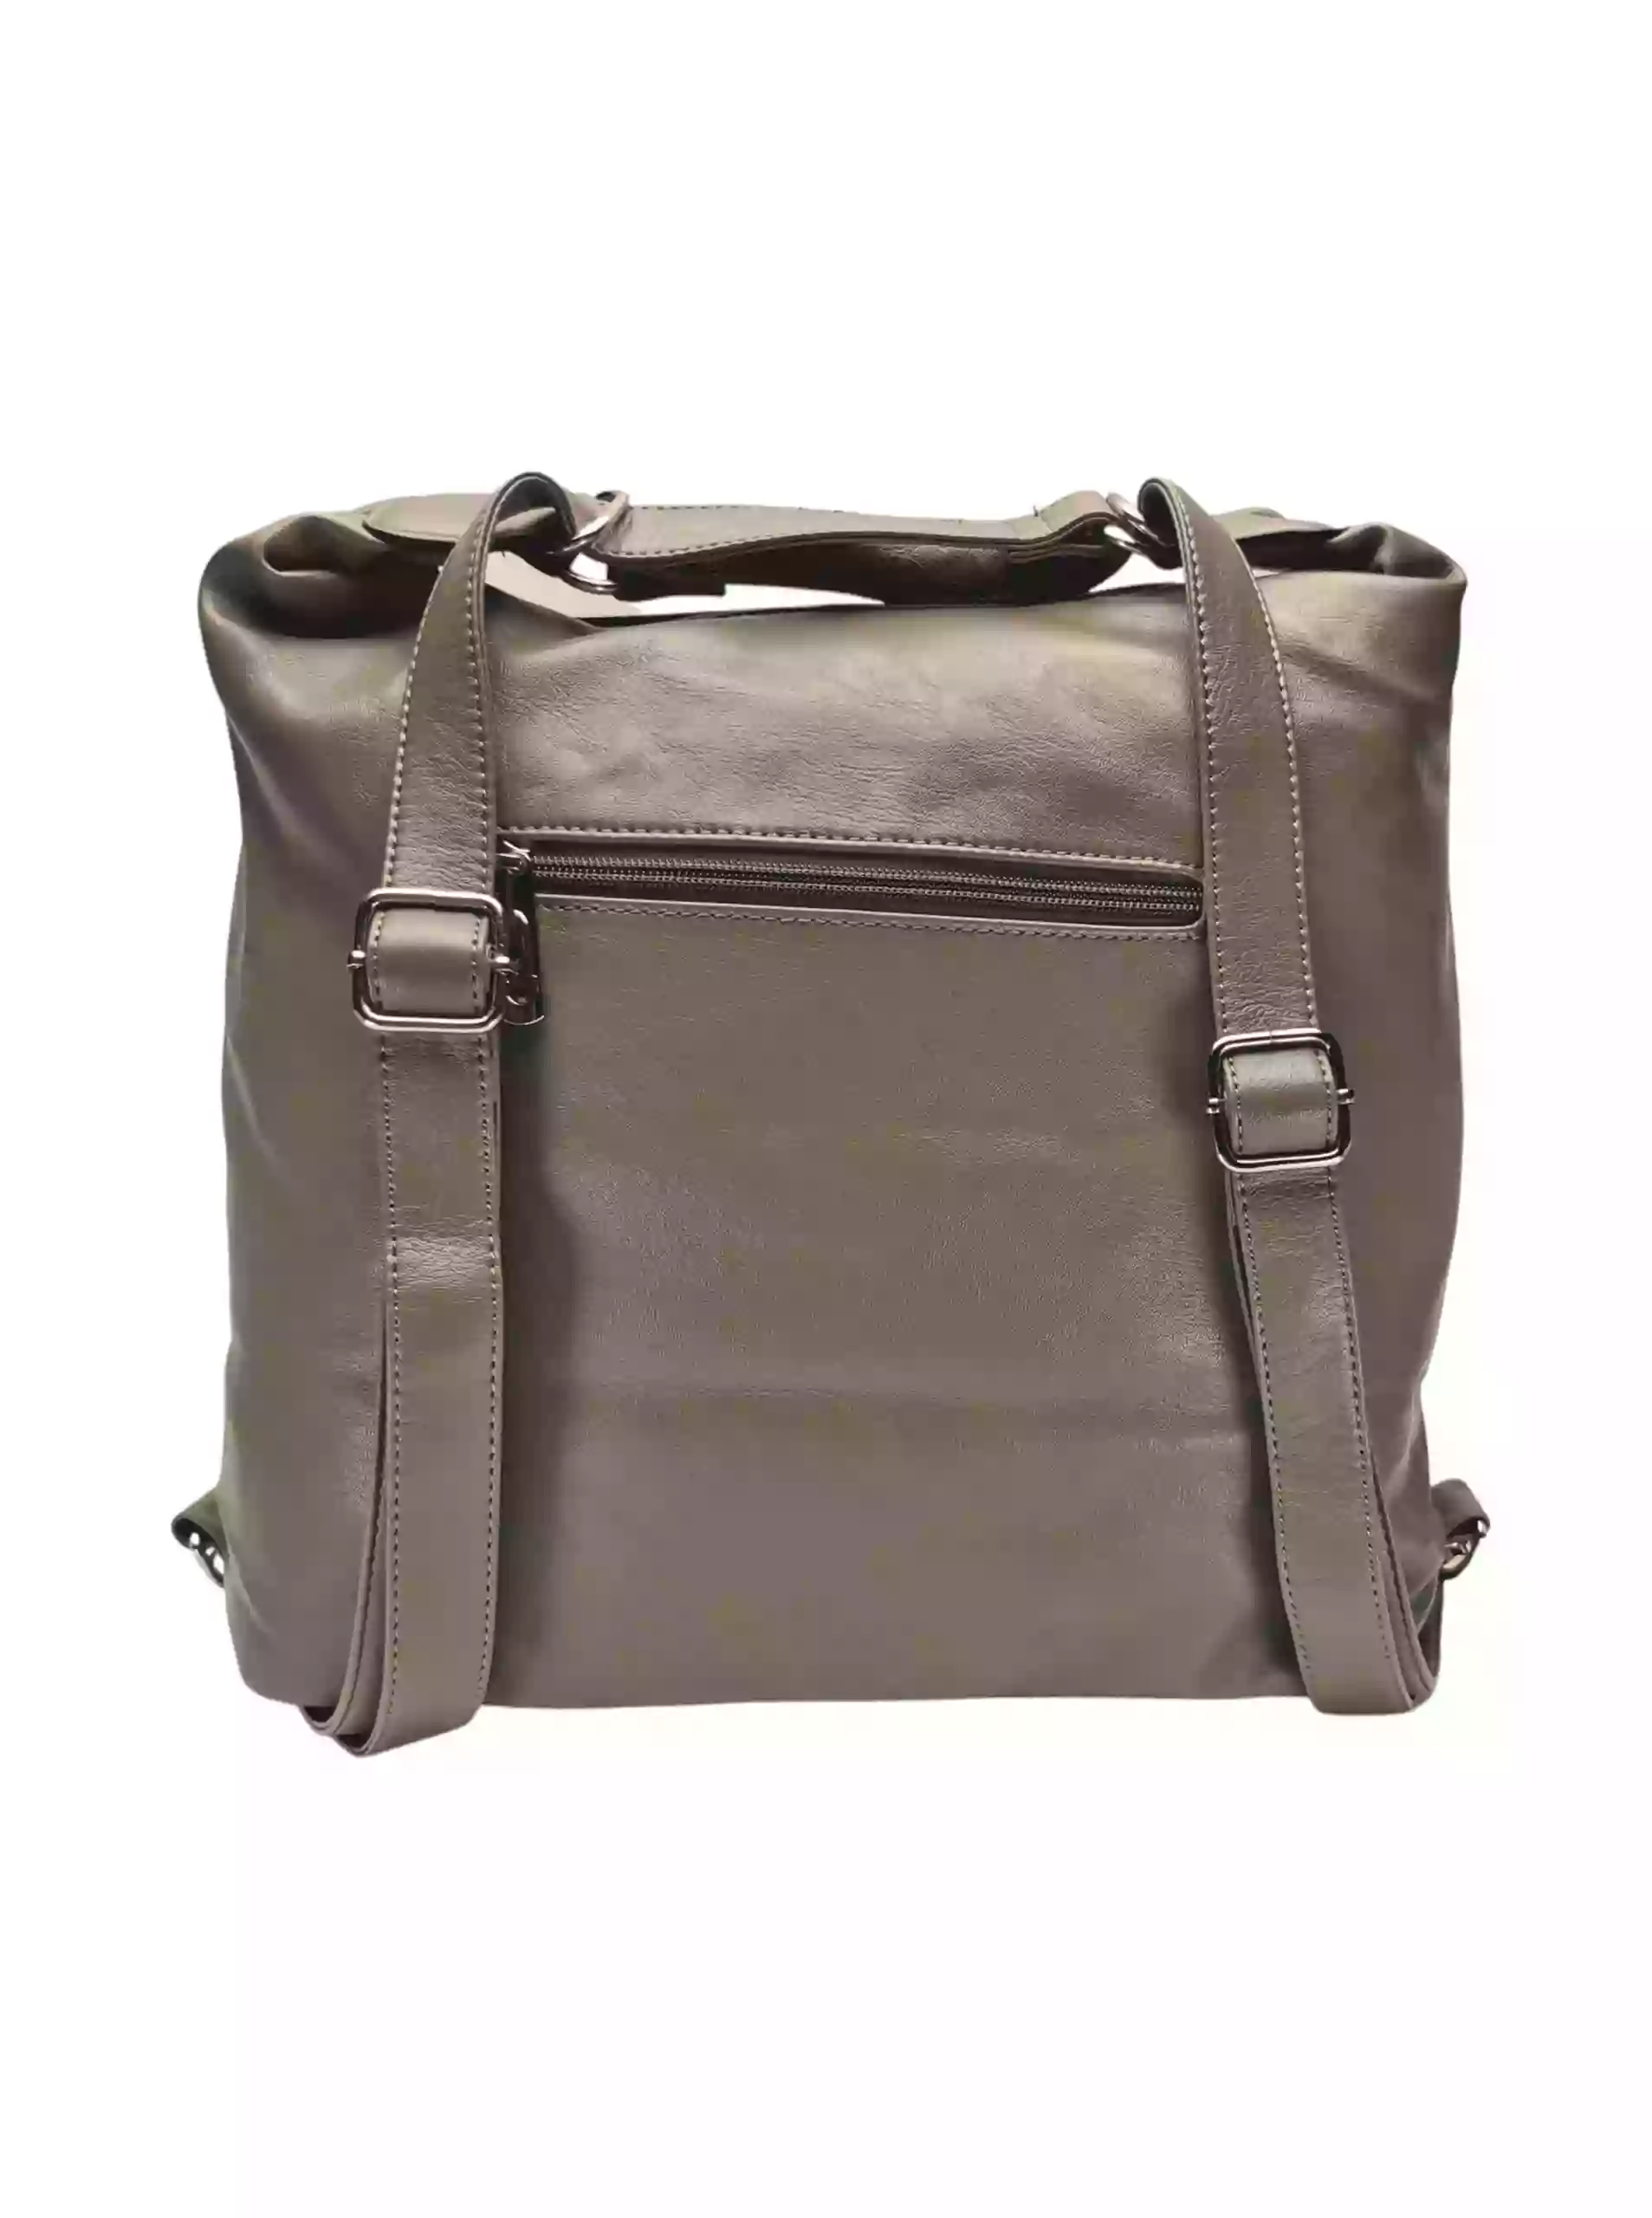 Velký šedohnědý kabelko-batoh 2v1 s šikmými kapsami, Tapple, H18076O, zadní strana kabelko-batohu s popruhy